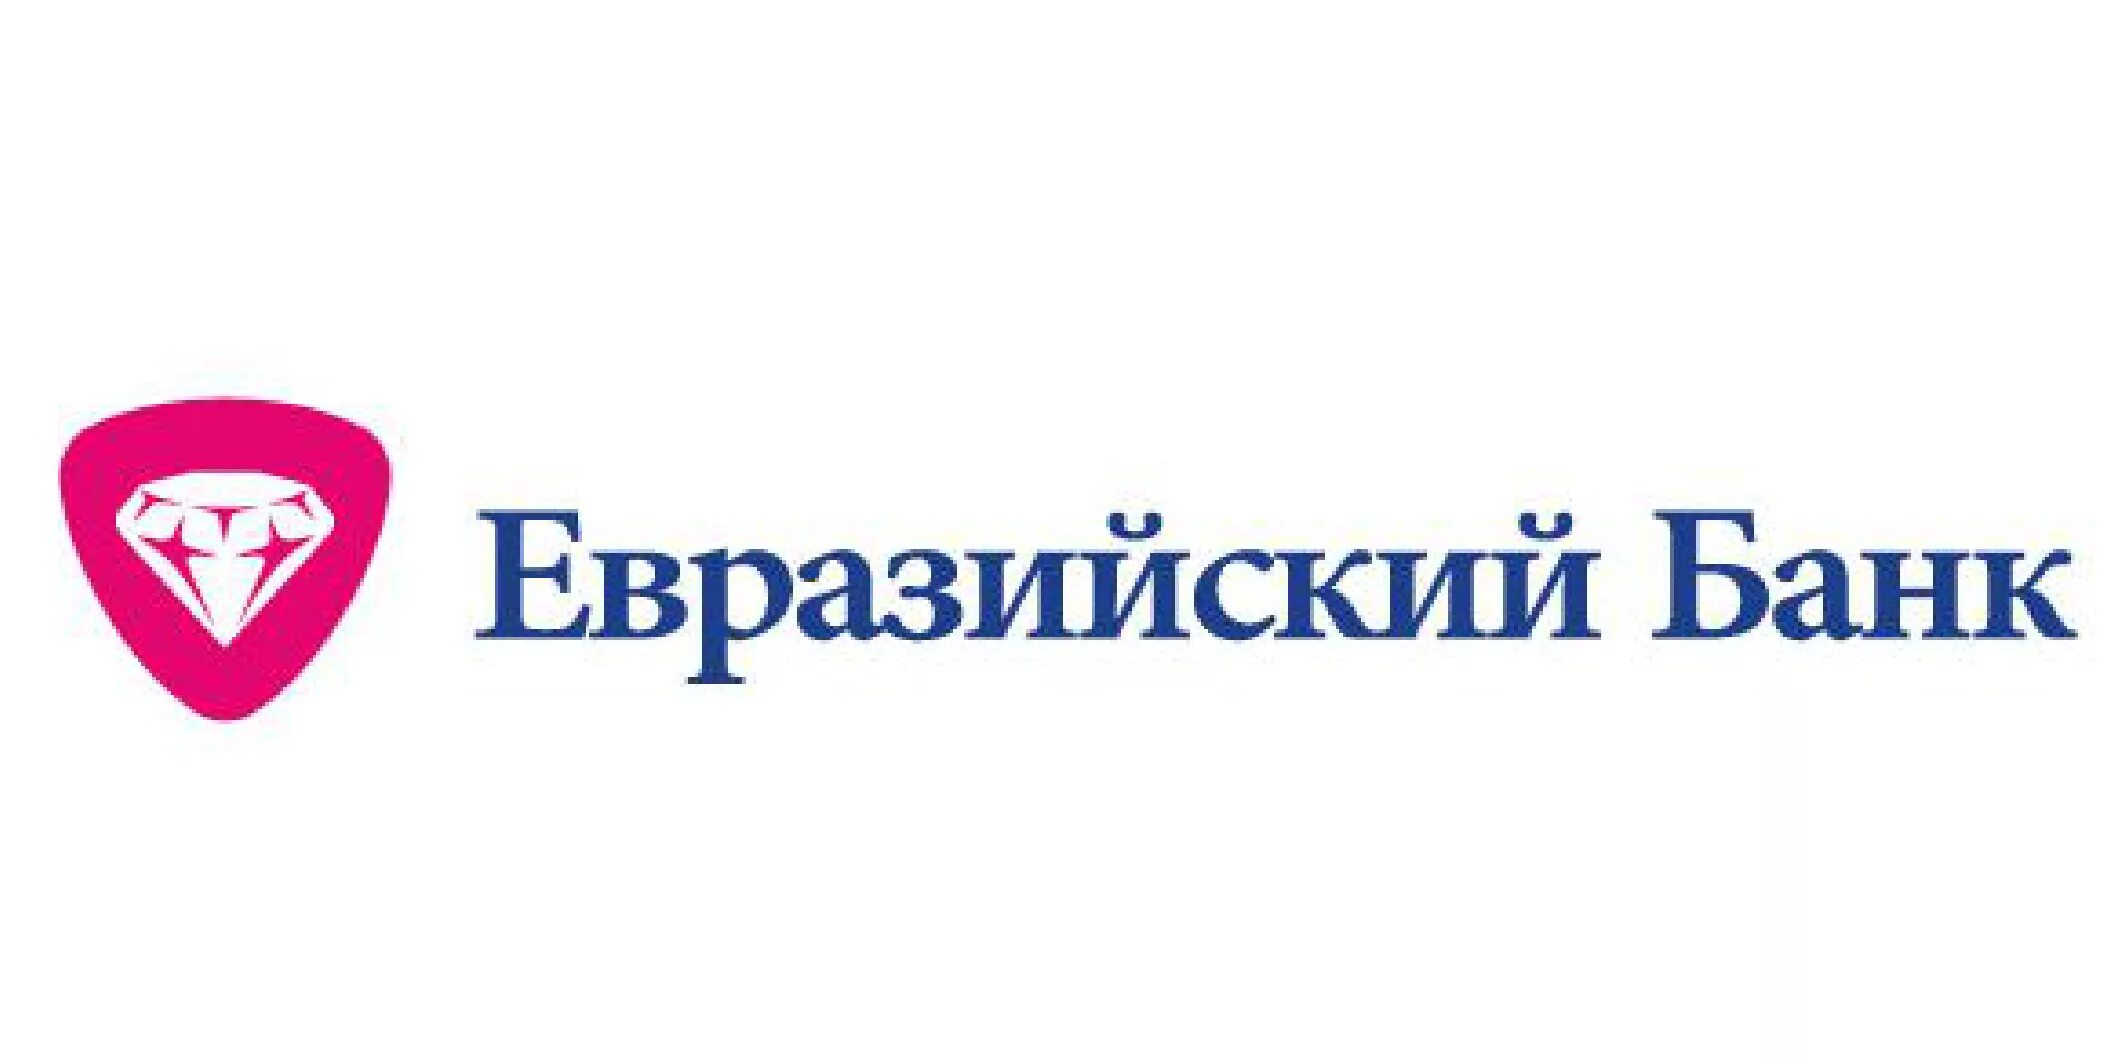 Ао евразия. Евразийский банк. Логотип Евразийского банка. Евразийский банк лого. Публичное акционерное общество Евразийский банк.